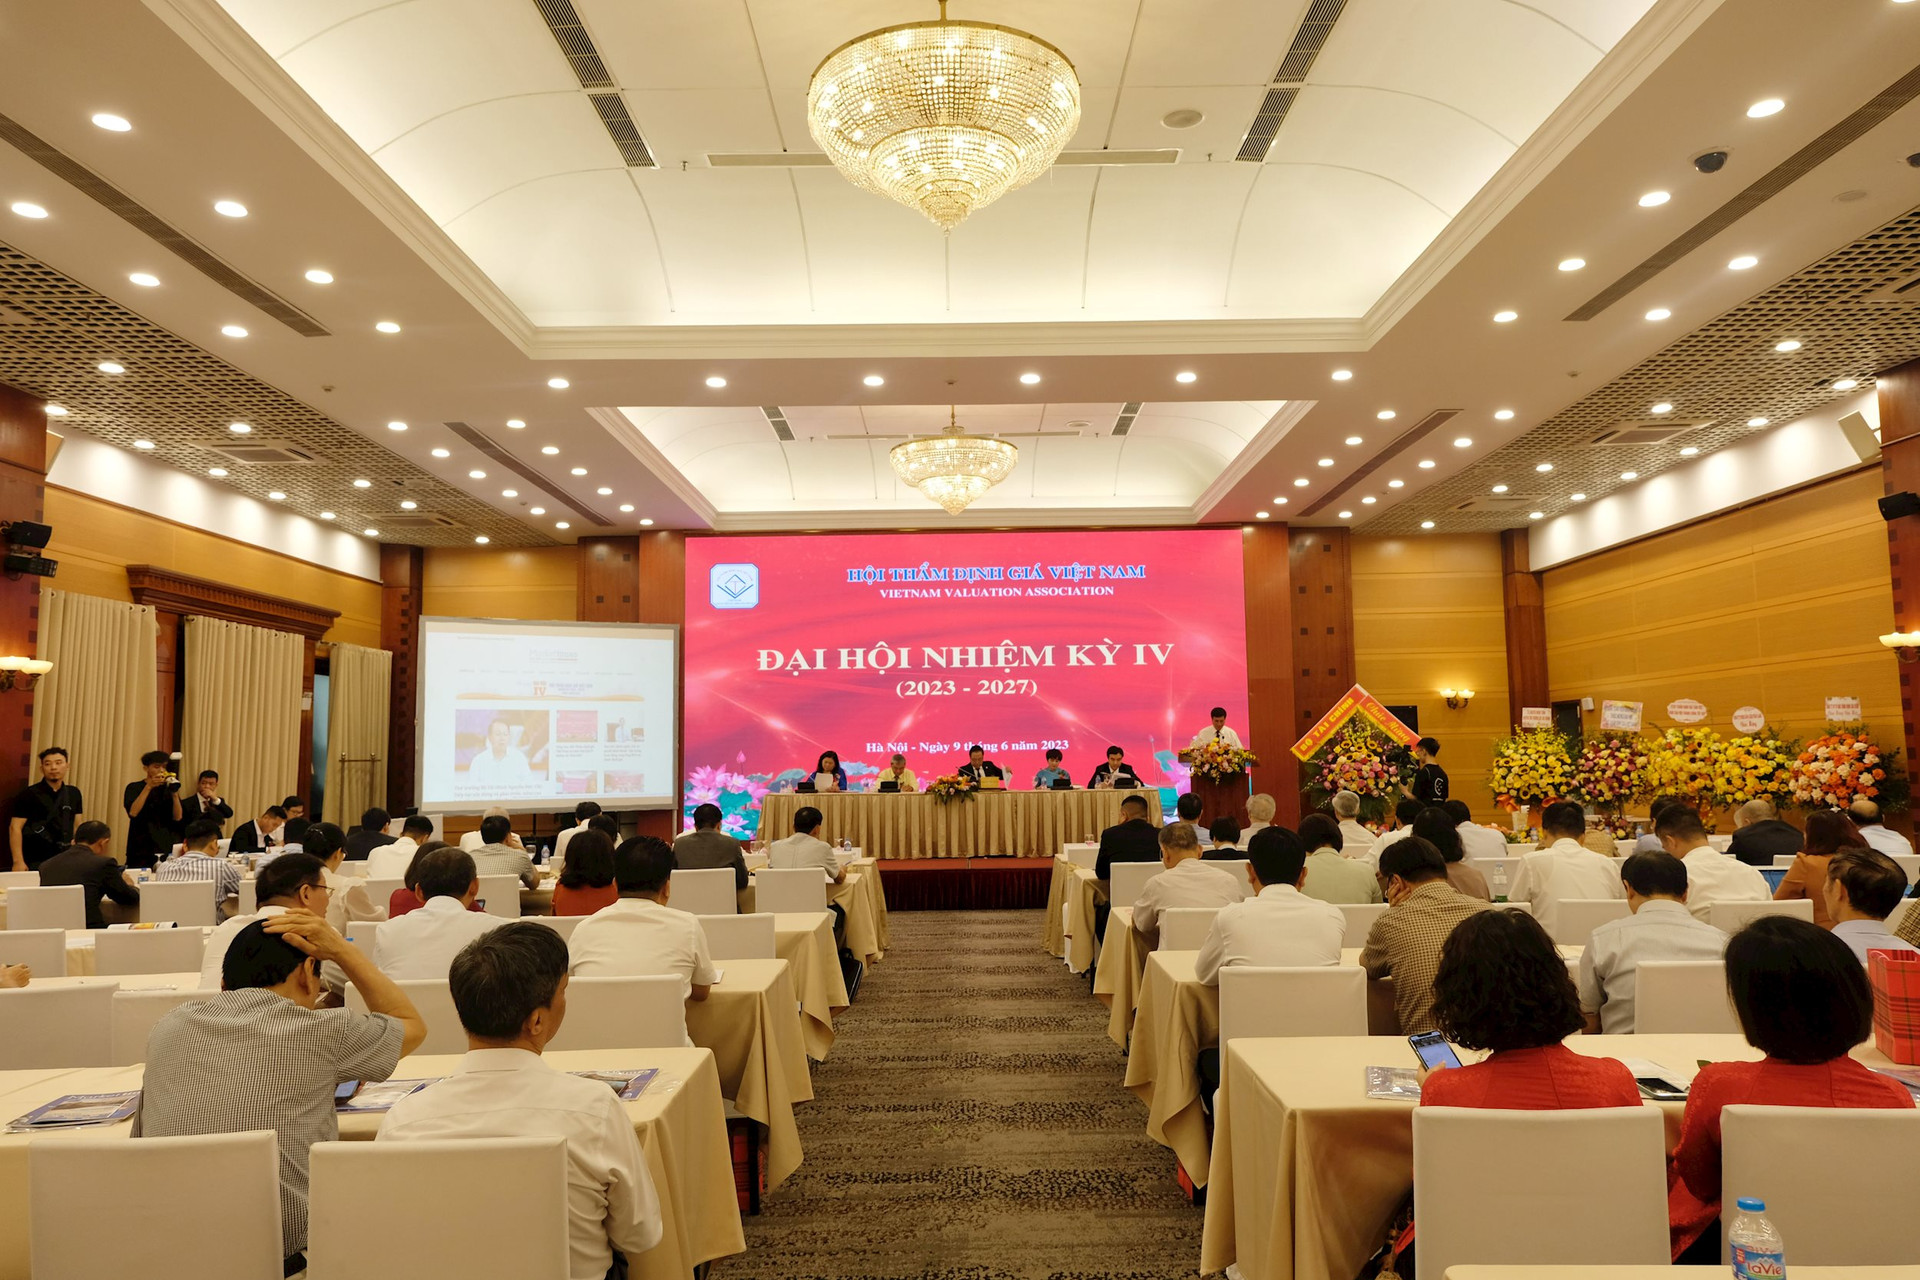 Sáng nay, Hội Thẩm định giá Việt Nam tổ chức Đại hội nhiệm kỳ IV 